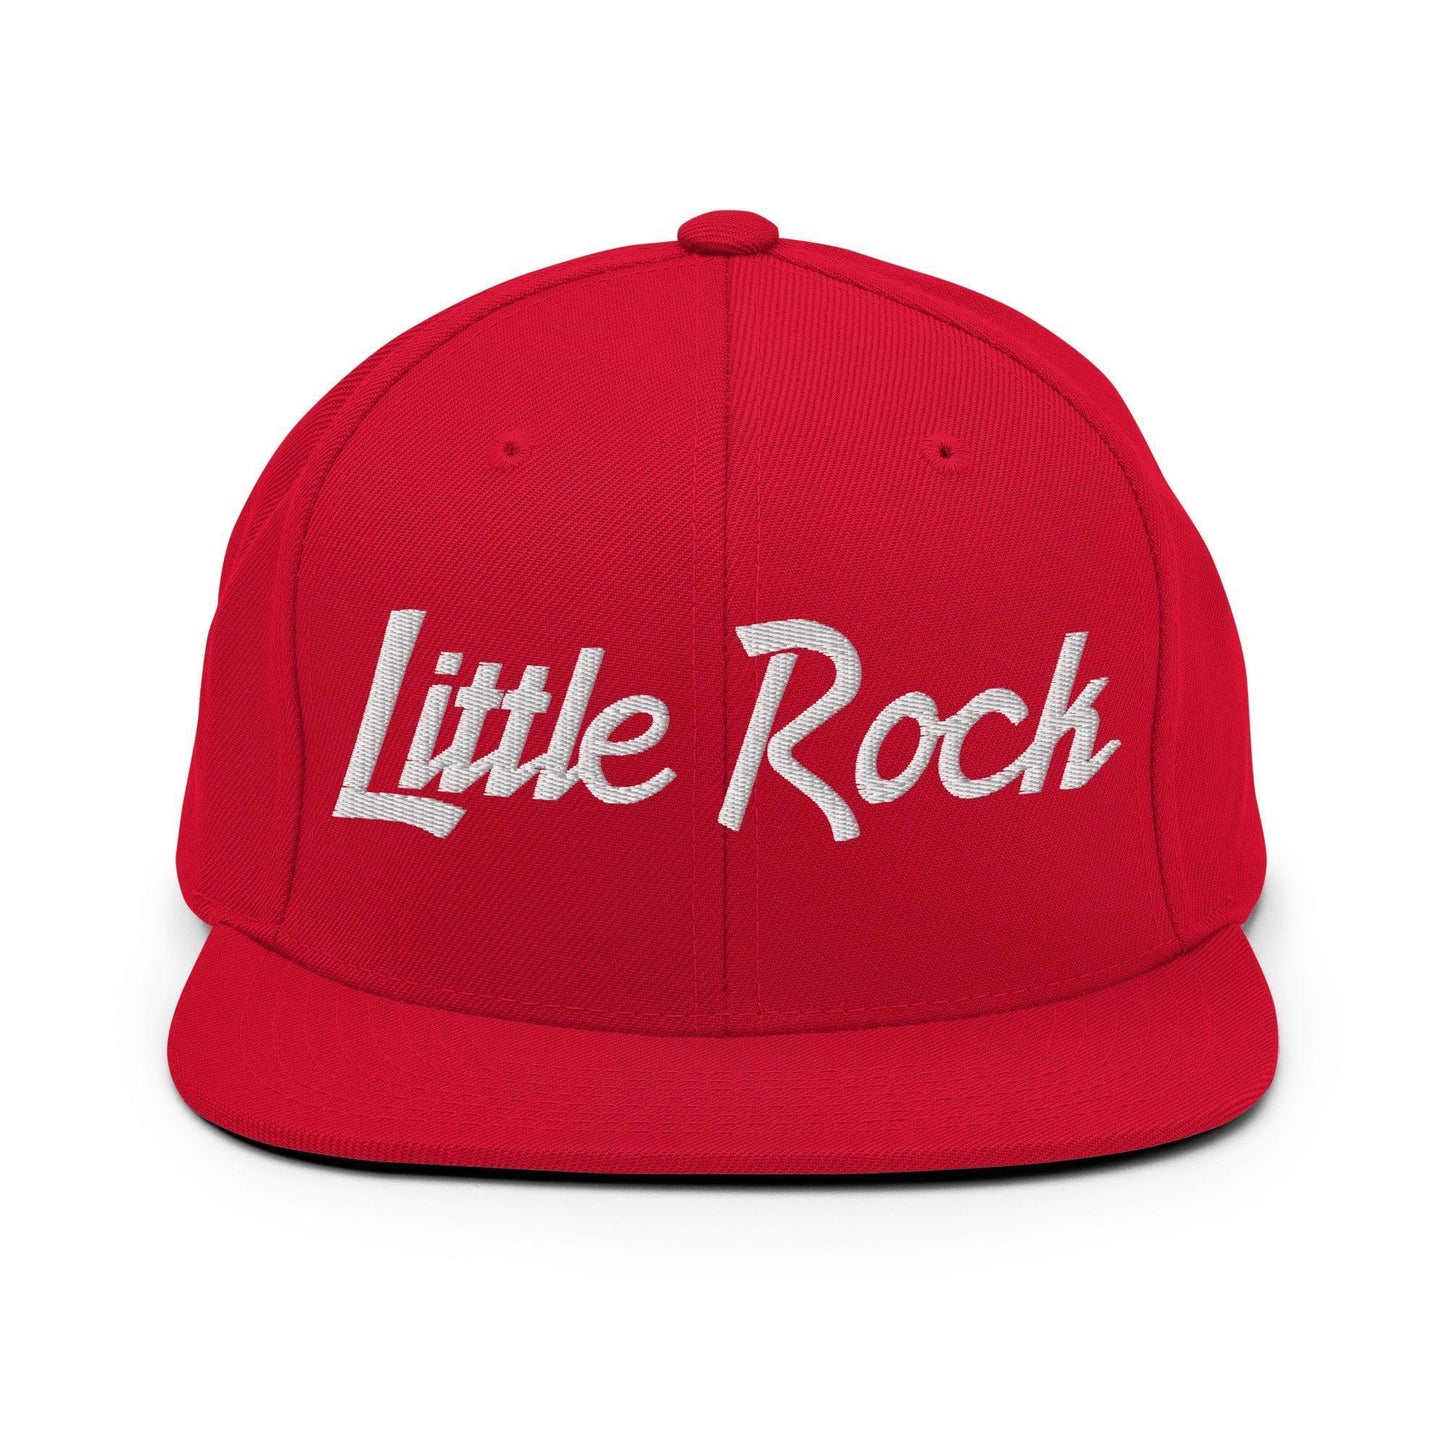 Little Rock Script Snapback Hat Red